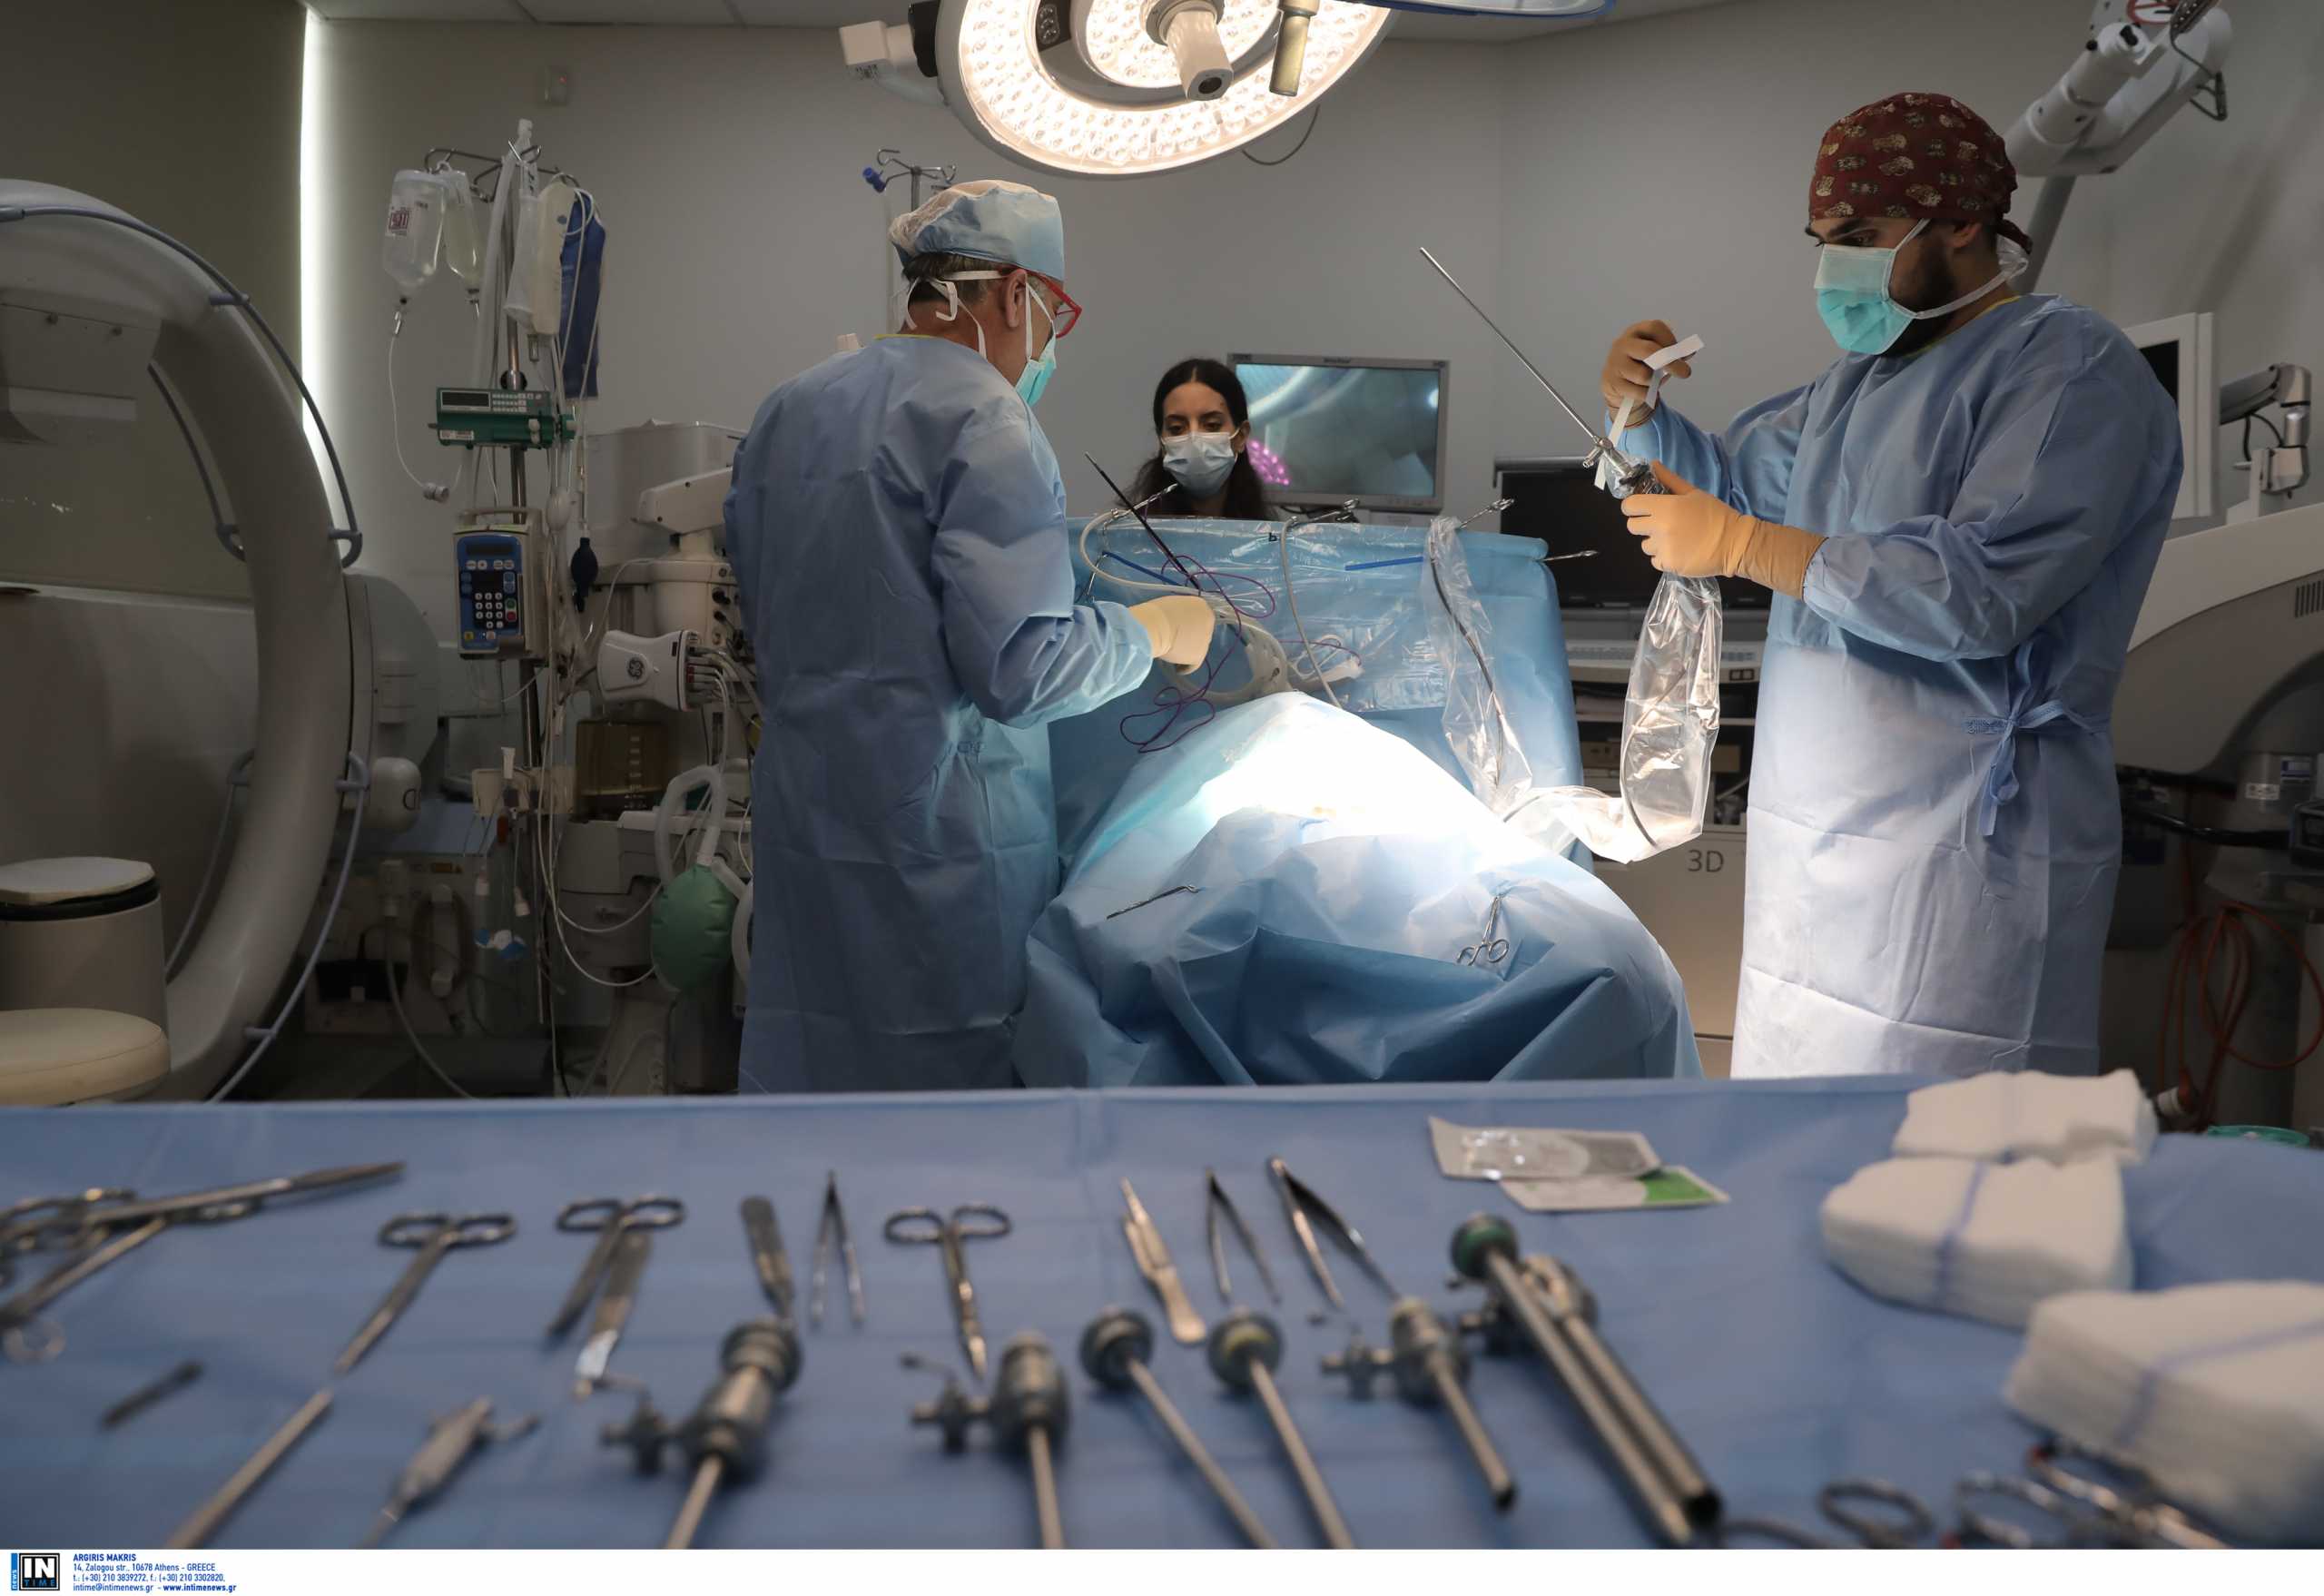 Μυτιλήνη: Σηκώθηκε όρθια στα 99 της μετά από εγχείρηση για κάταγμα ισχύου